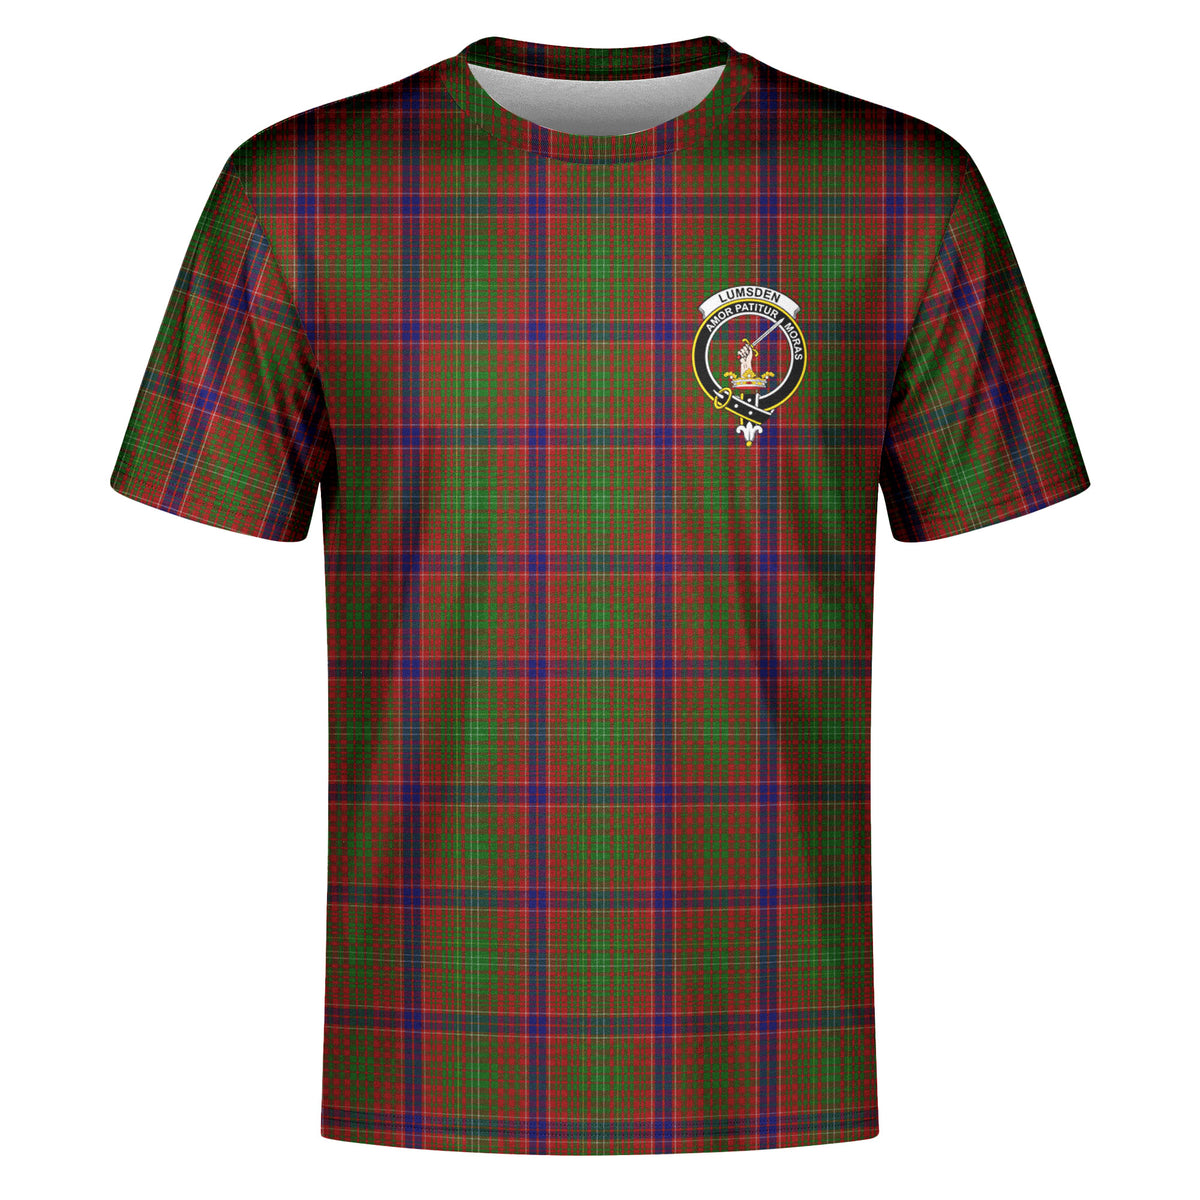 Lumsden Tartan Crest T-shirt